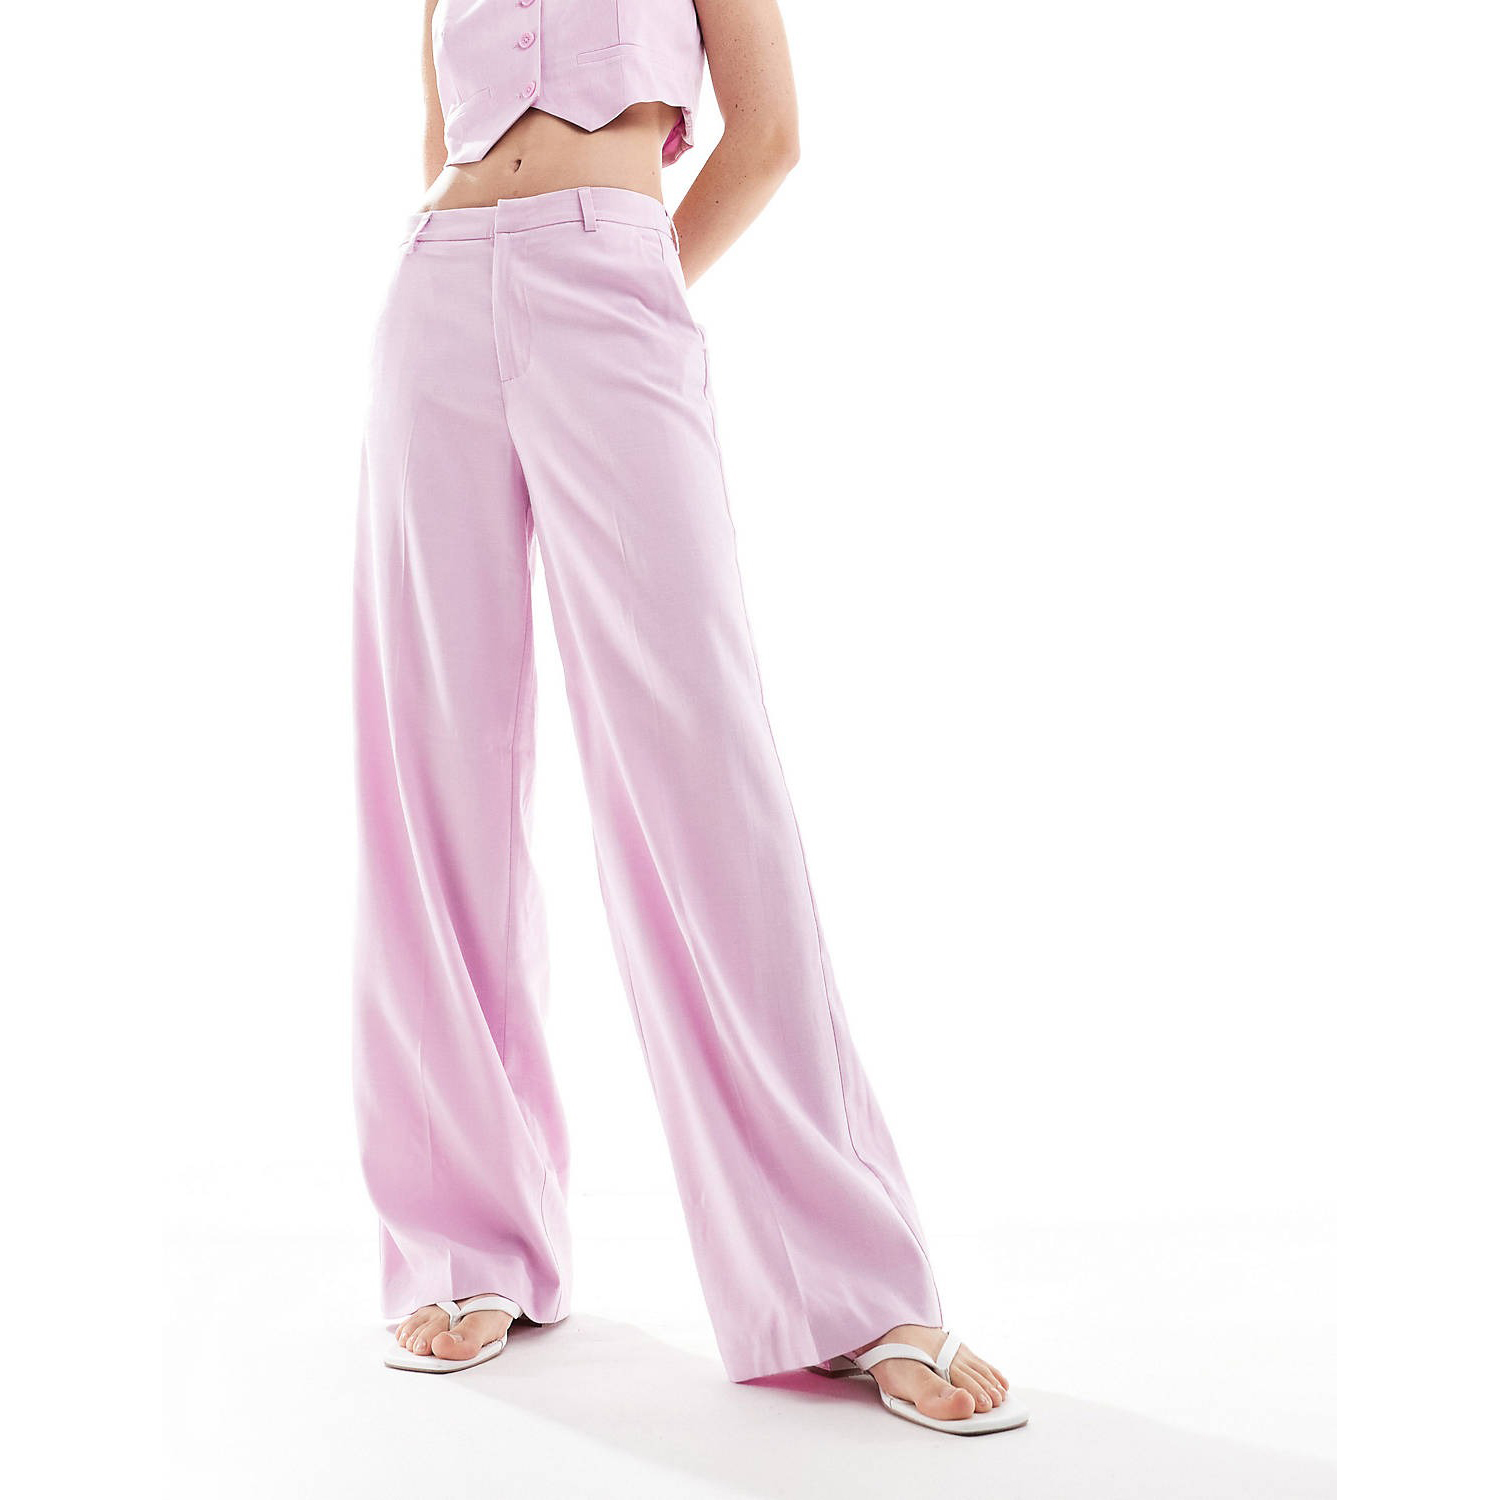 Брюки Only High Waisted Wide Leg, светло-розовый брюки карандаш женские с завышенной талией повседневные элегантные тонкие штаны с широкими штанинами с эластичным поясом модная уличная